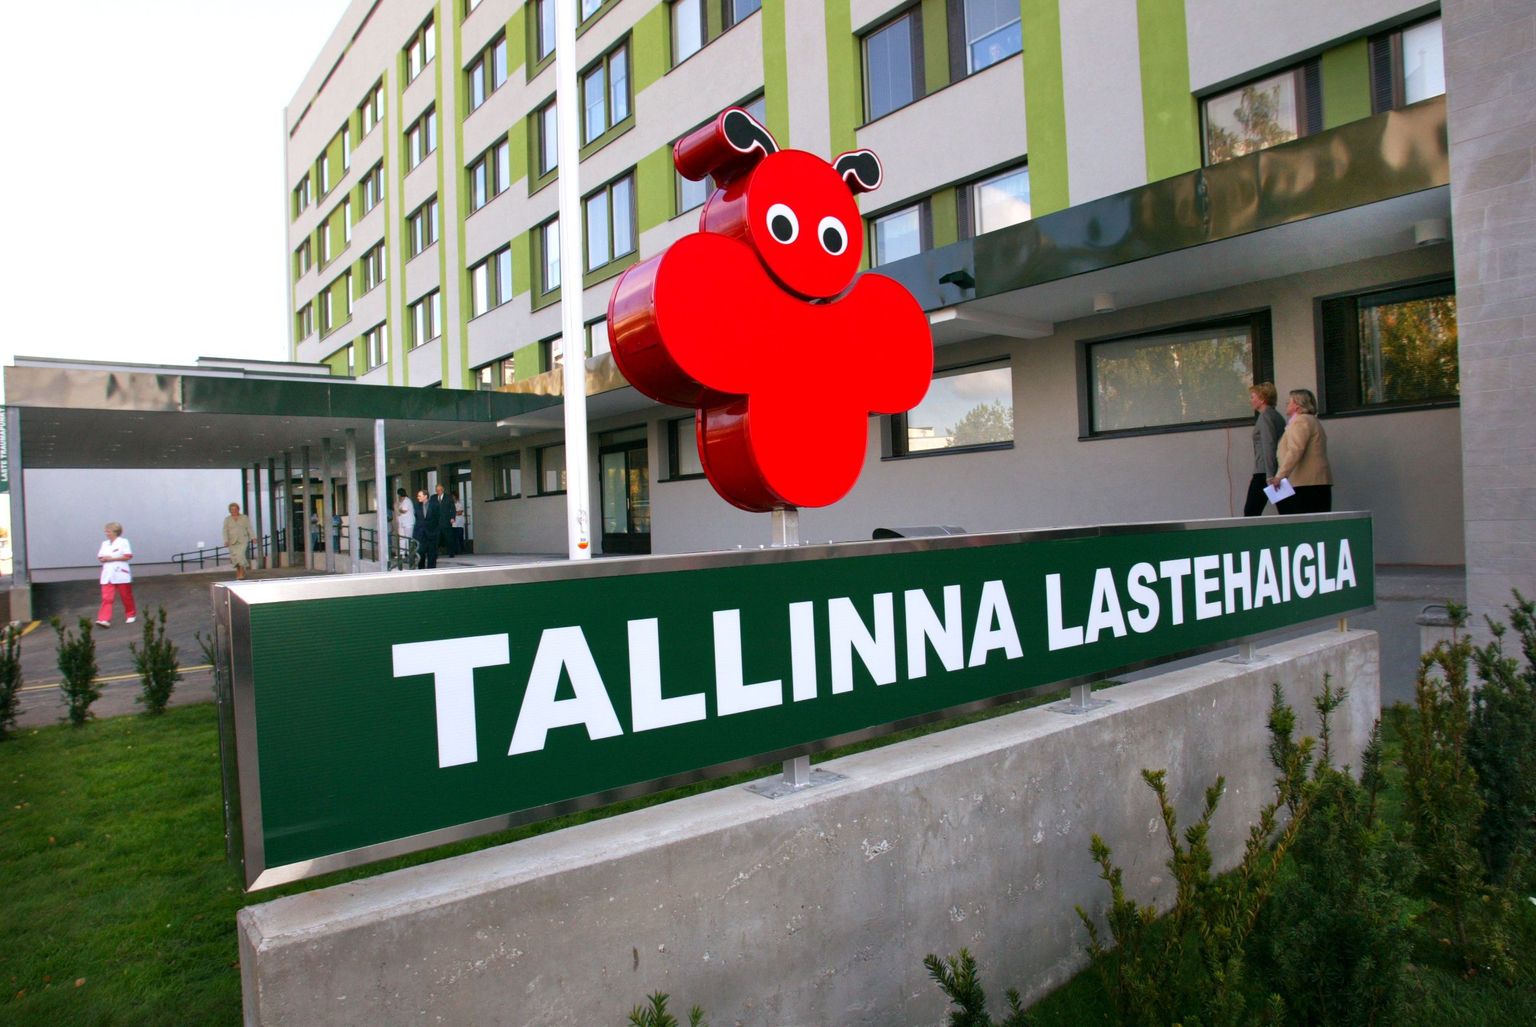 Tallinna lastehaigla.